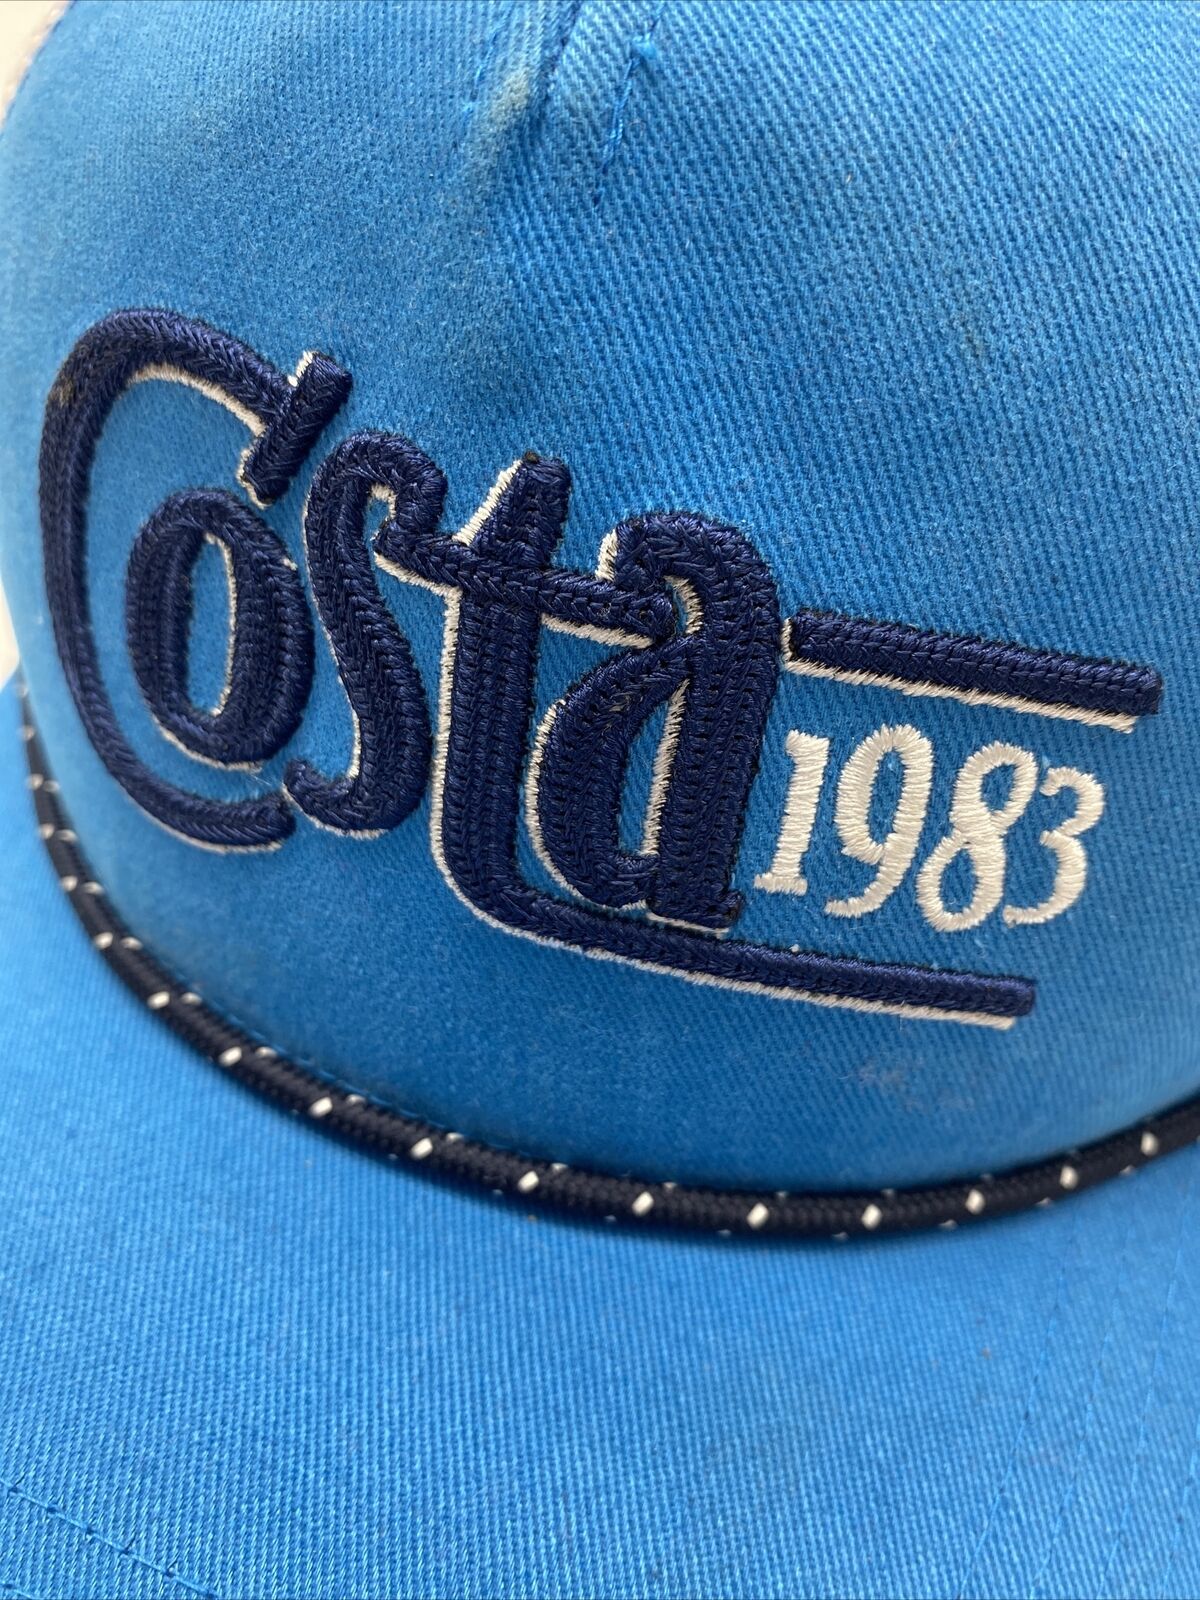 Costa Del Mar Costa 1983 Trucker Traditions Hat Cap Snapback Mesh